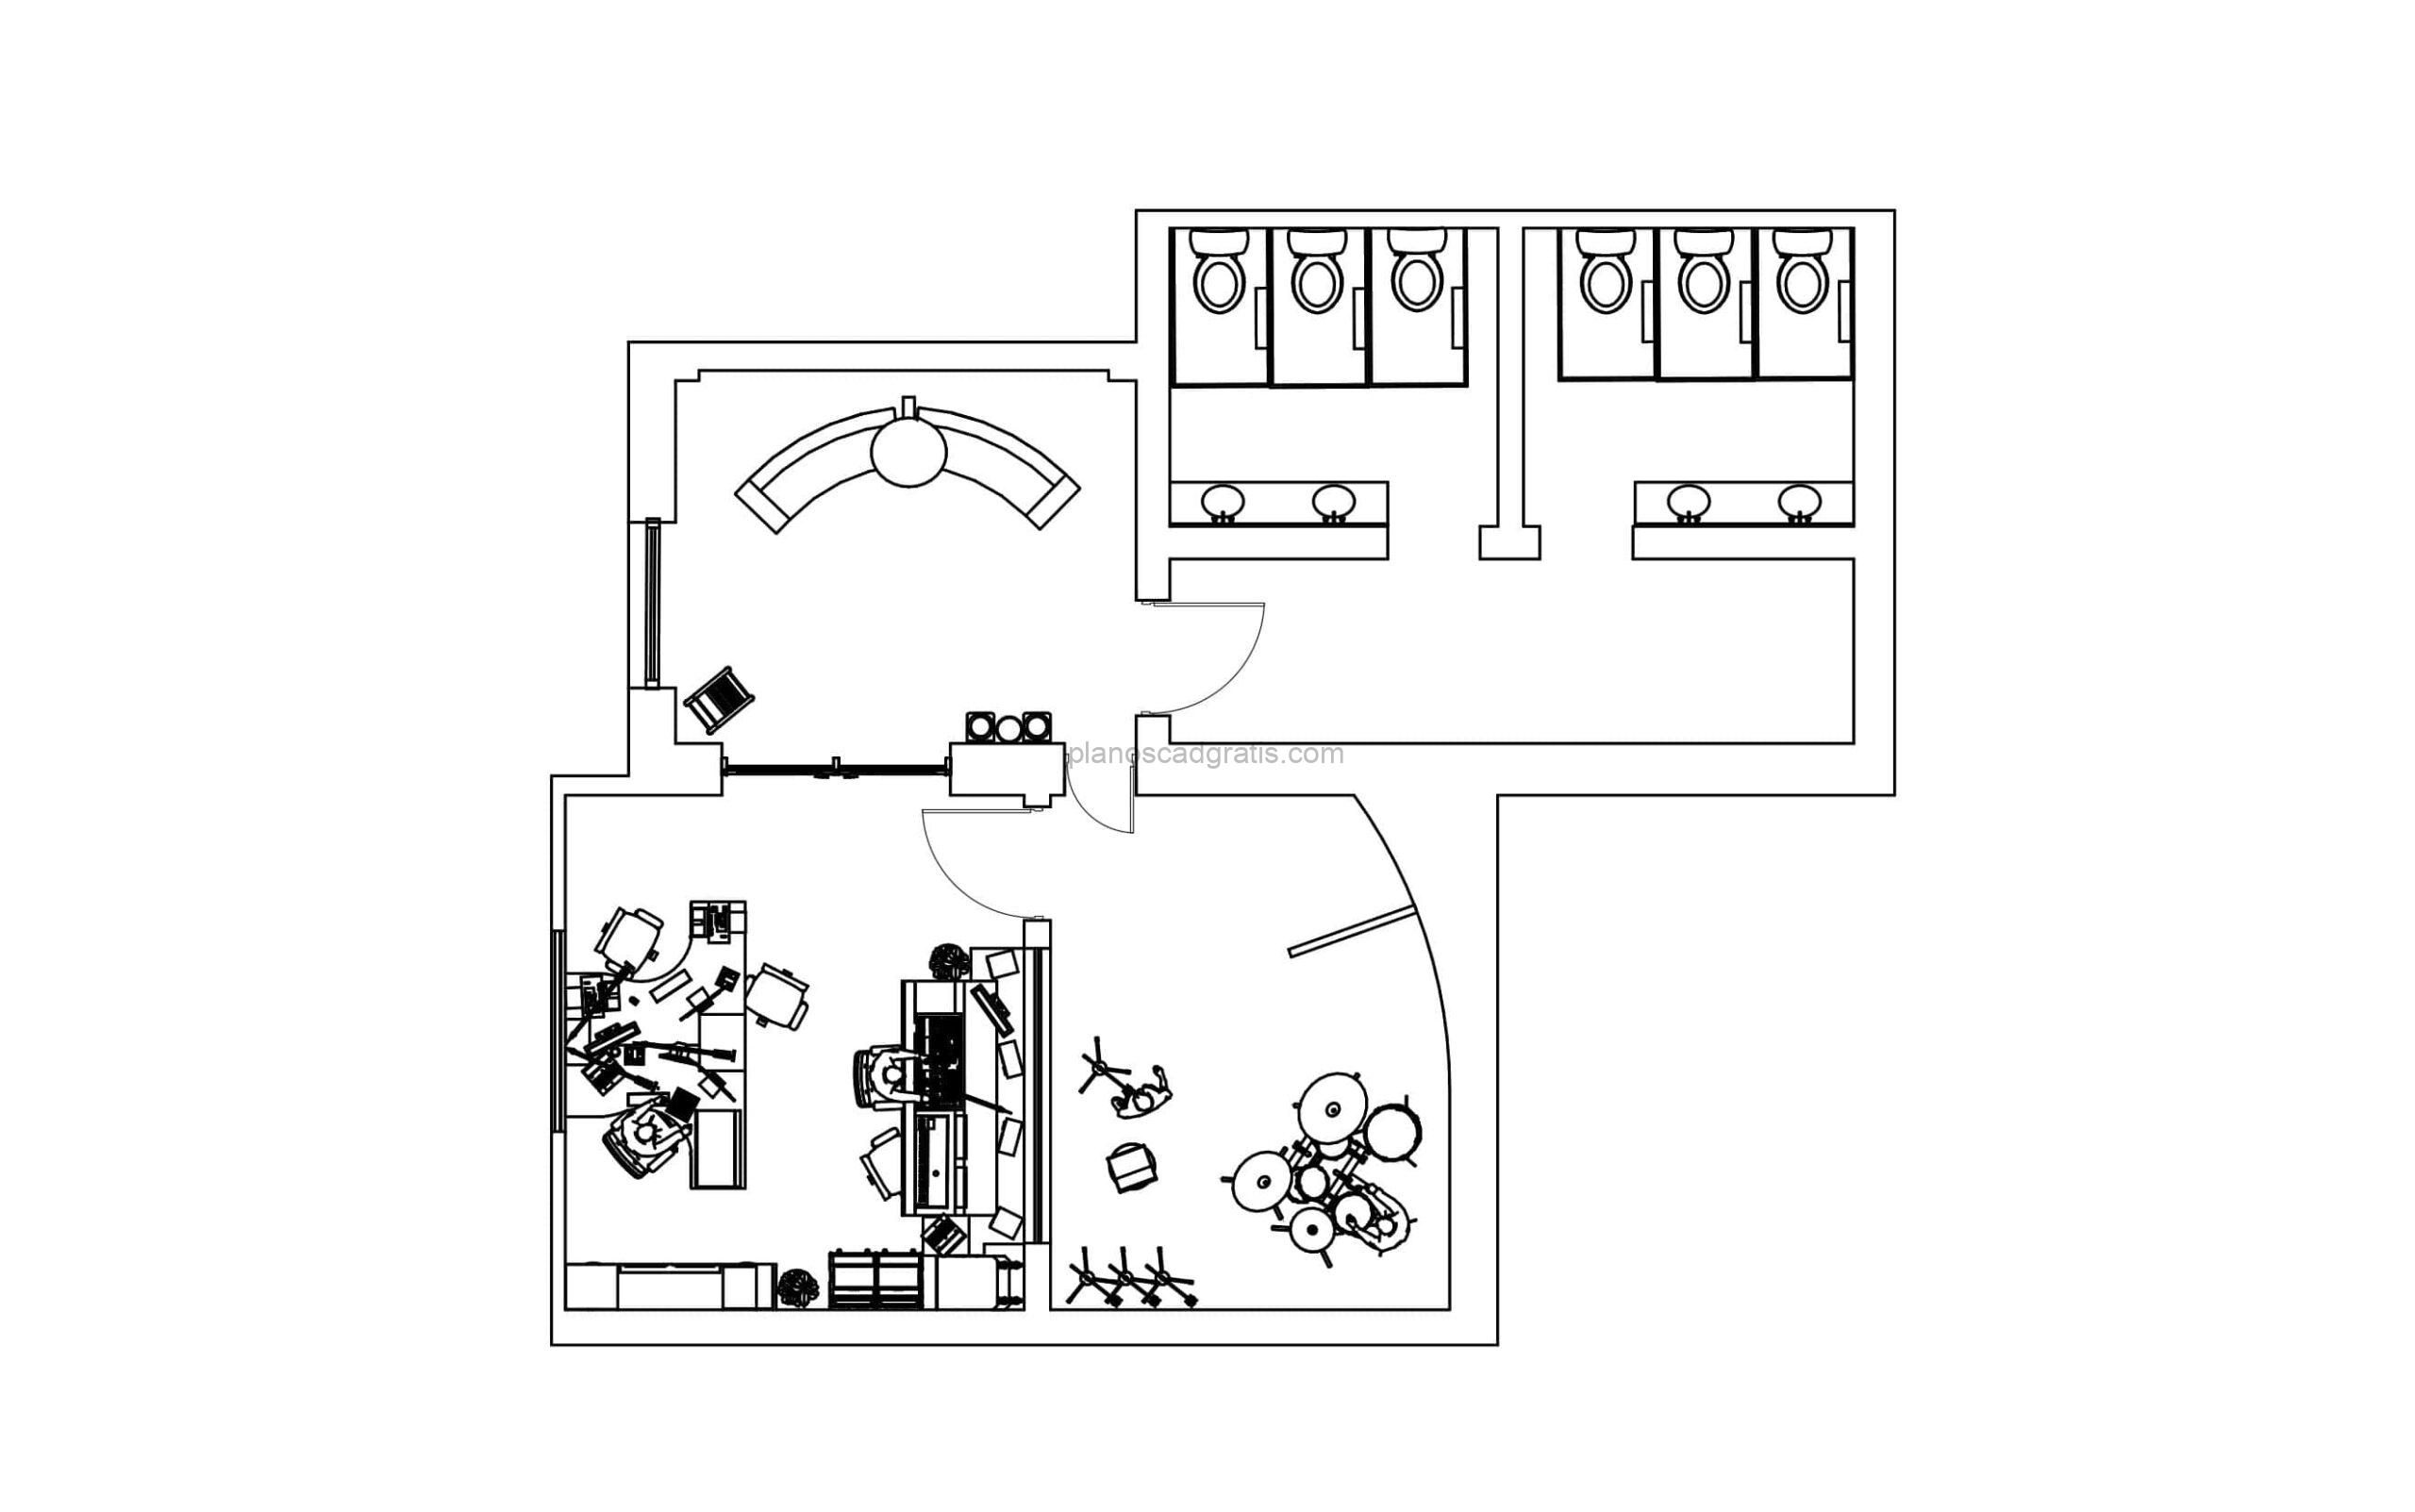 plano formato dwg de AutoCAD de estudio de grabación completo con planta arquitectonica amueblada para descarga gratis